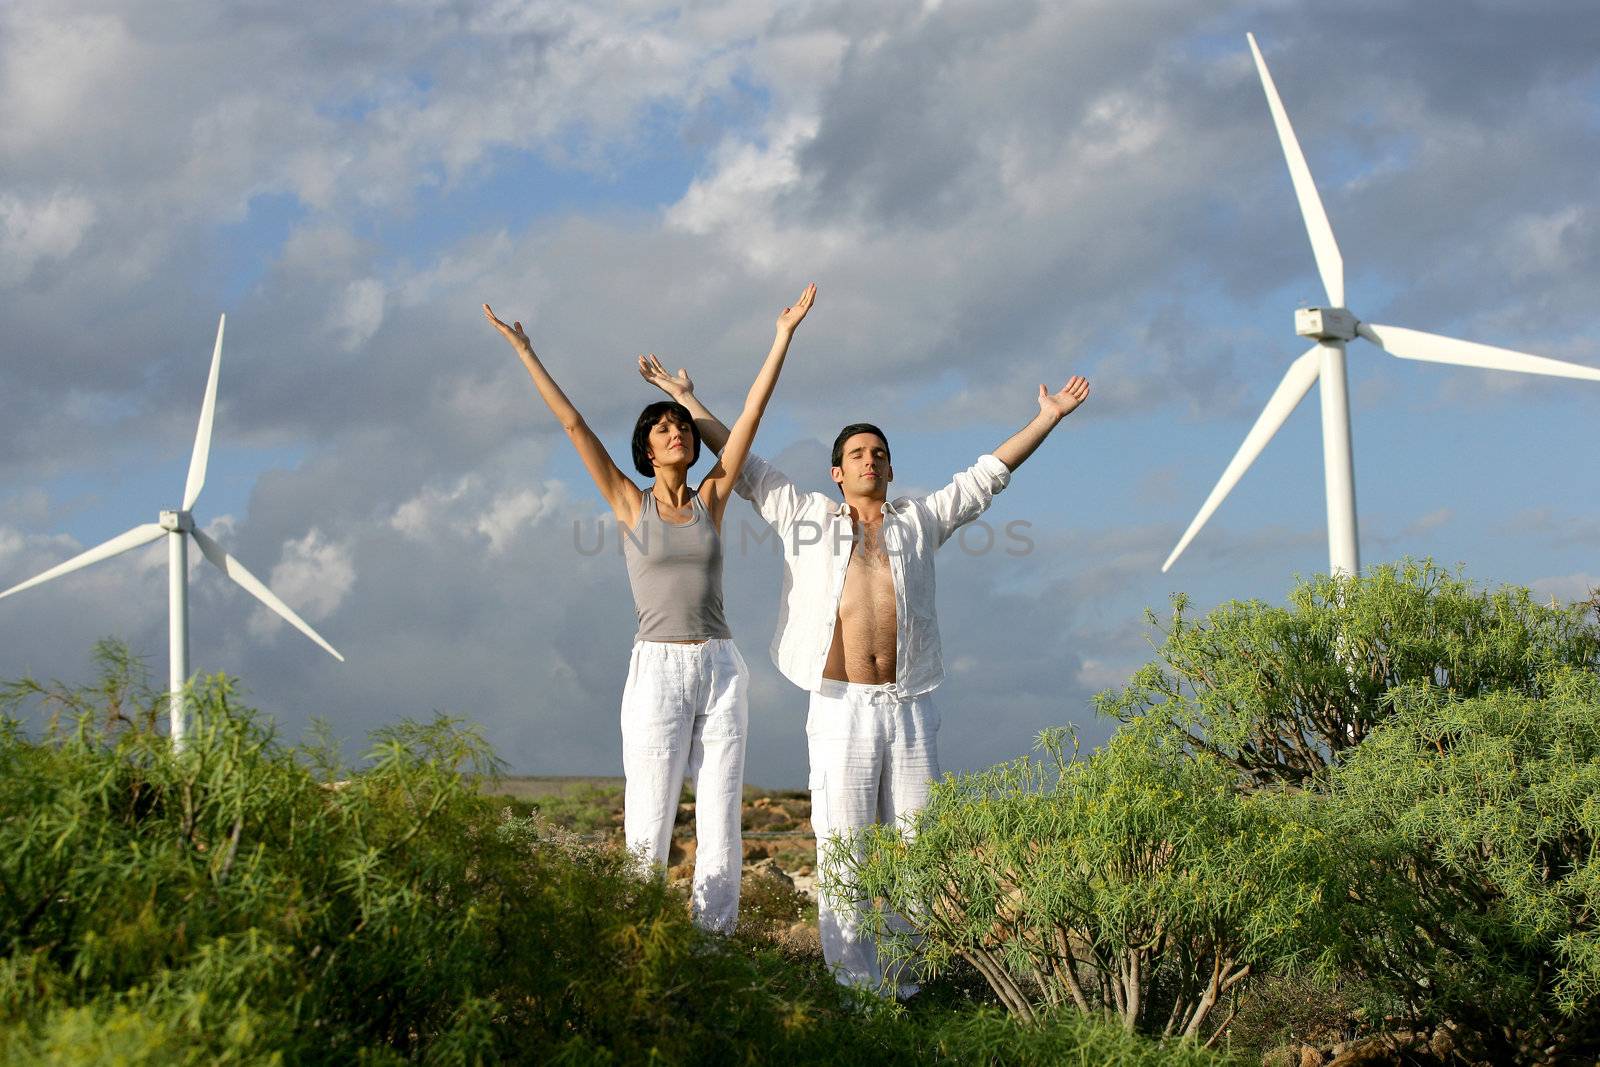 Zen couple on a wind farm by phovoir